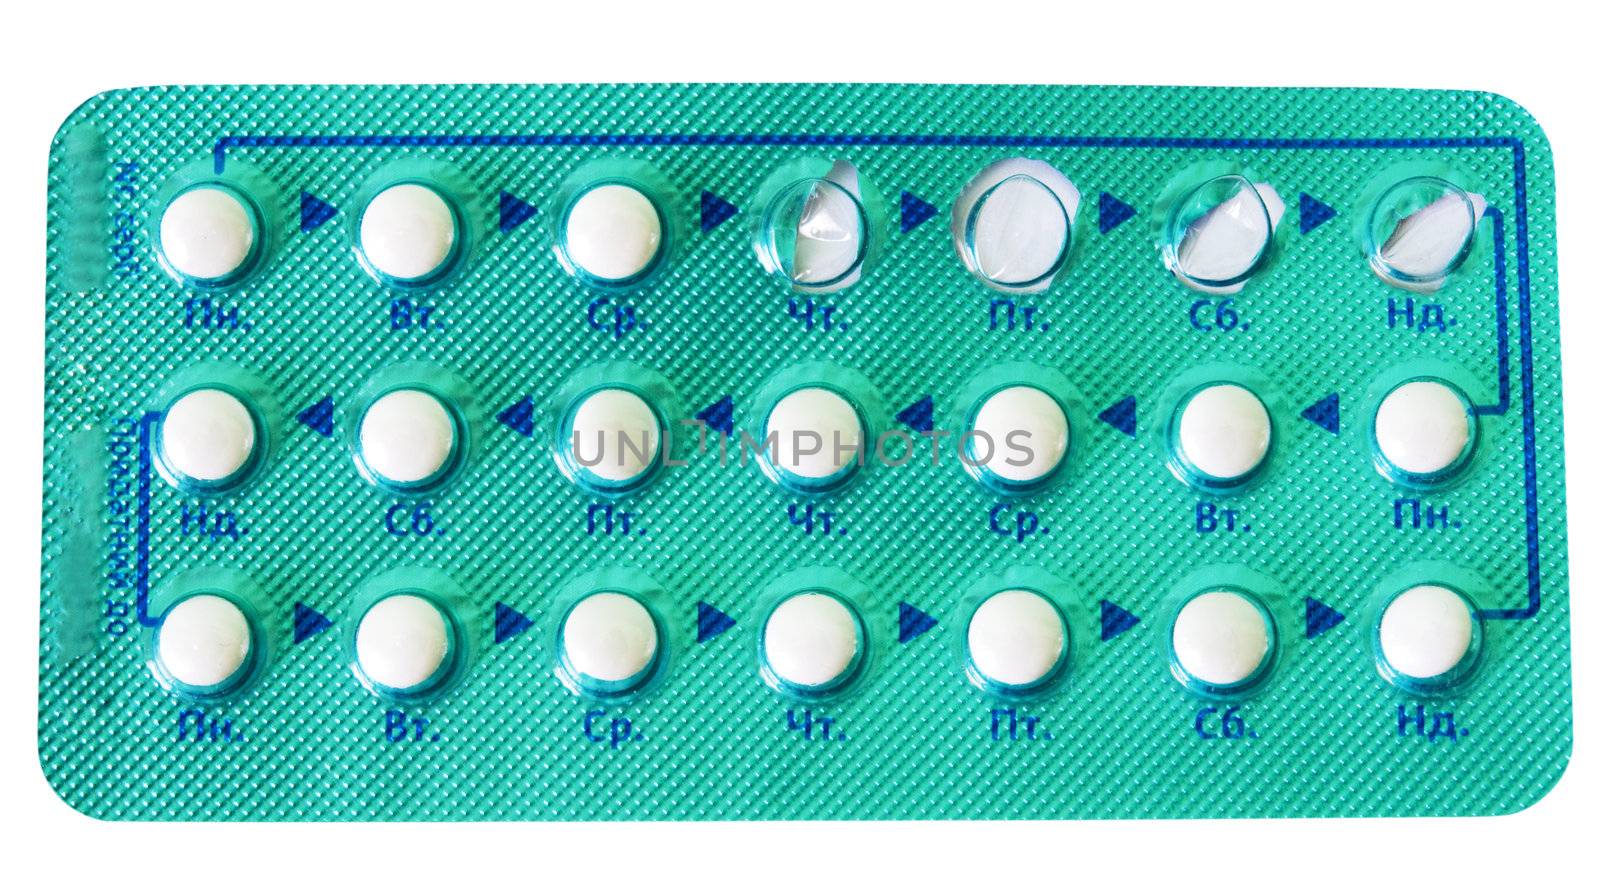 Contraceptive pills for 21 days by iryna_rasko